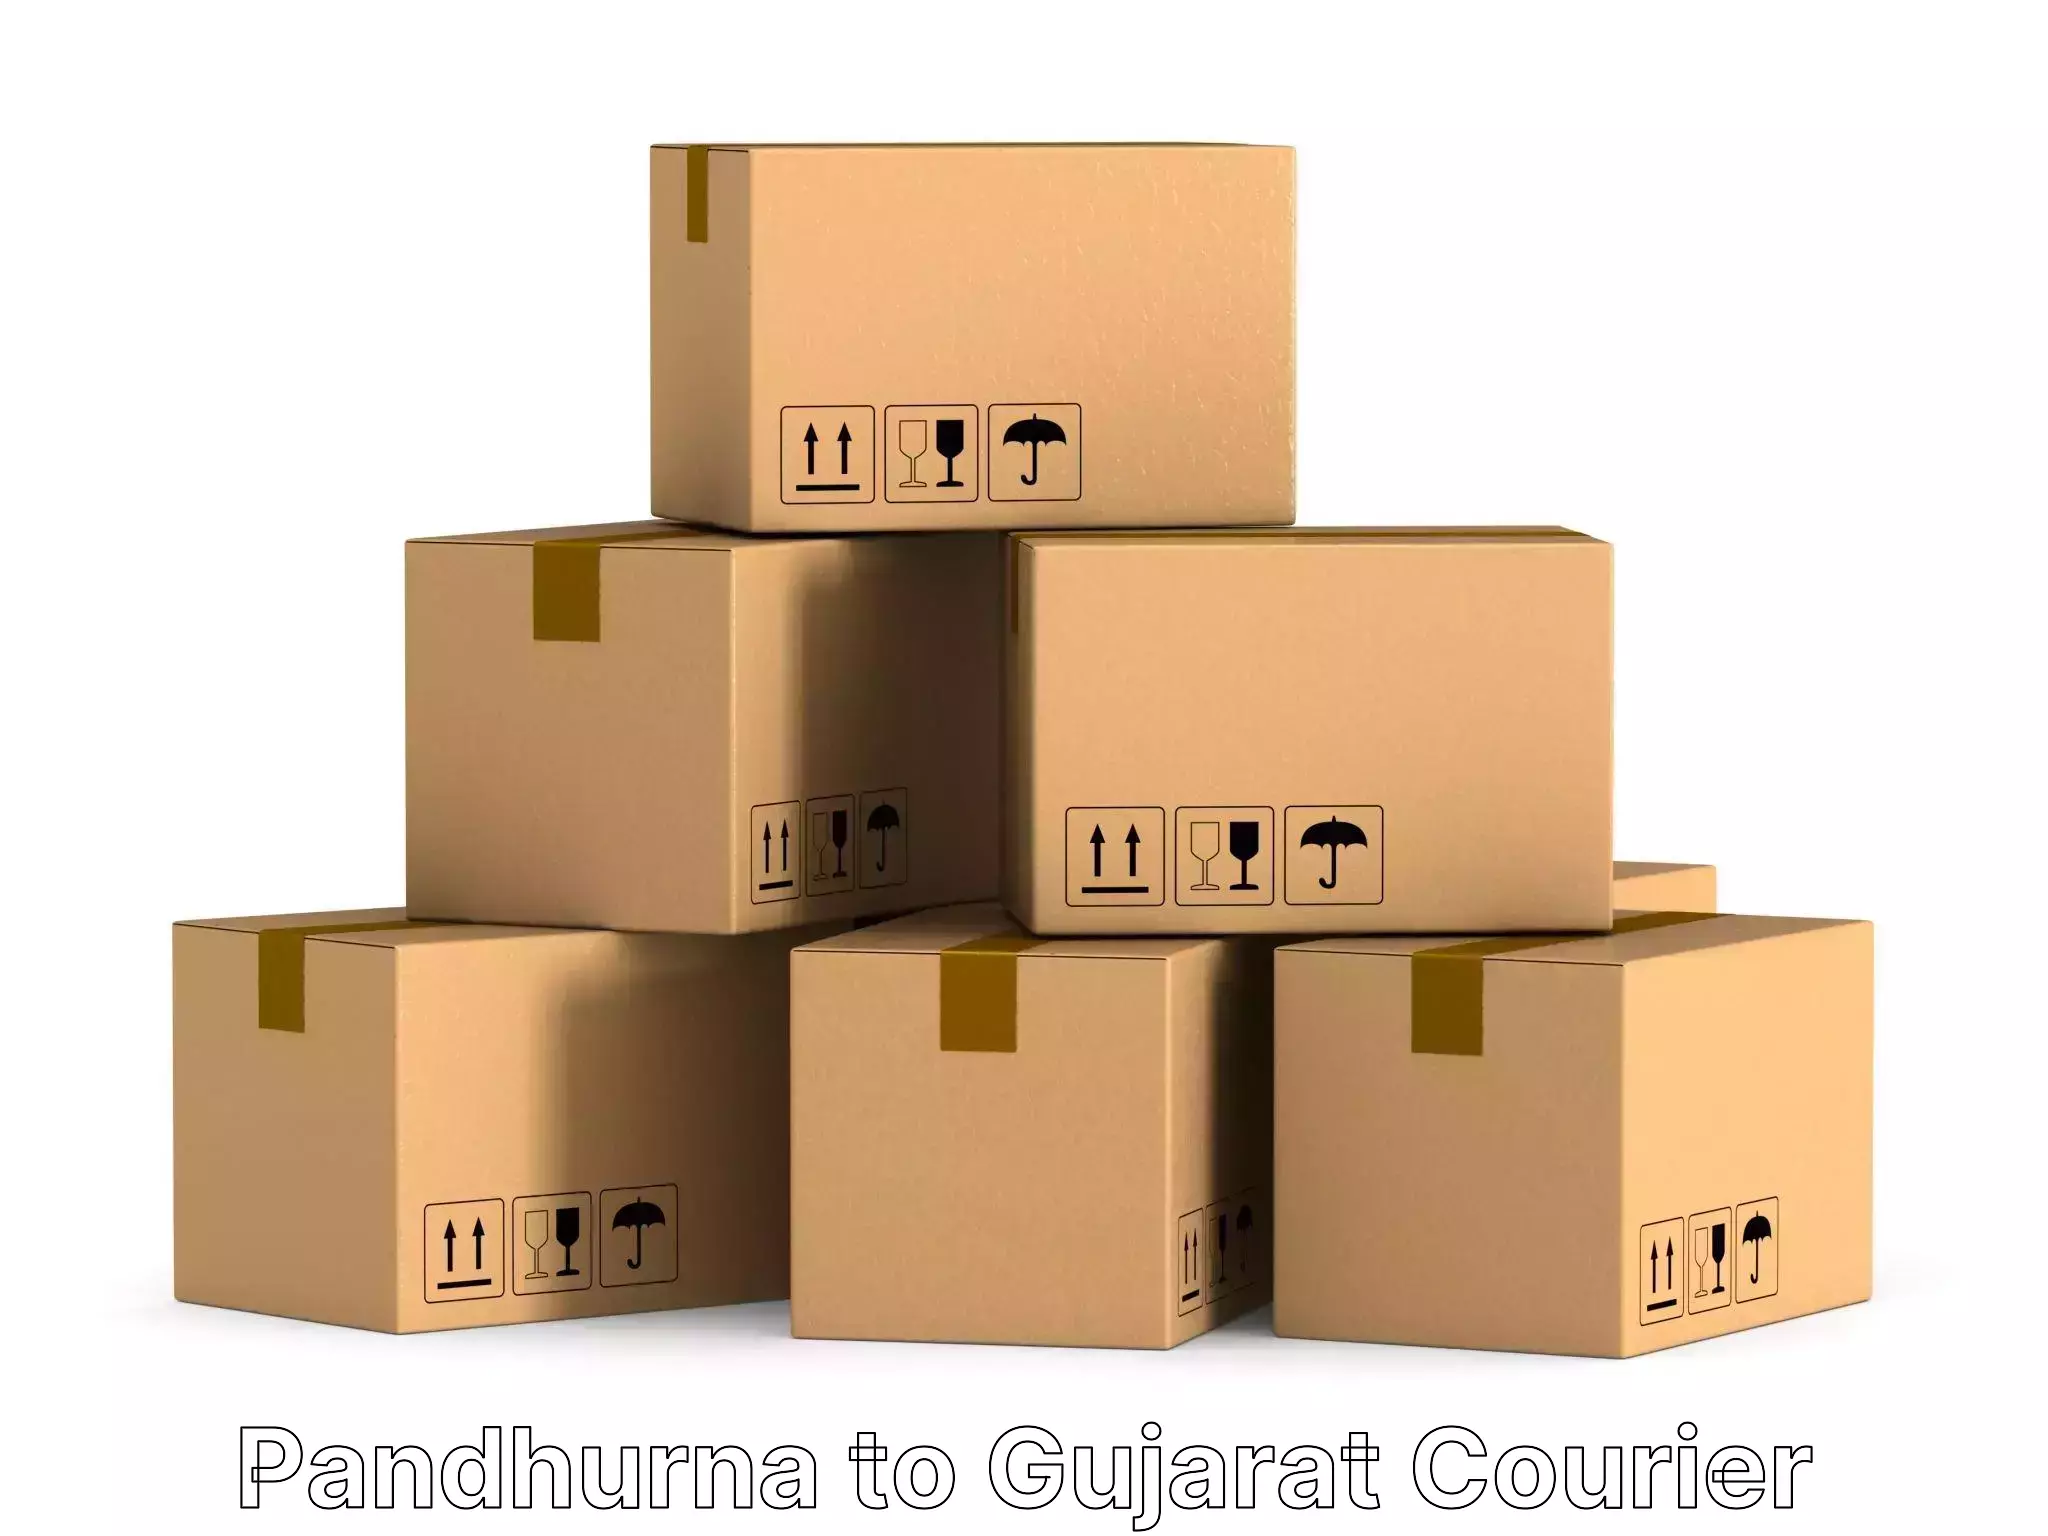 Furniture moving solutions Pandhurna to IIT Gandhi Nagar